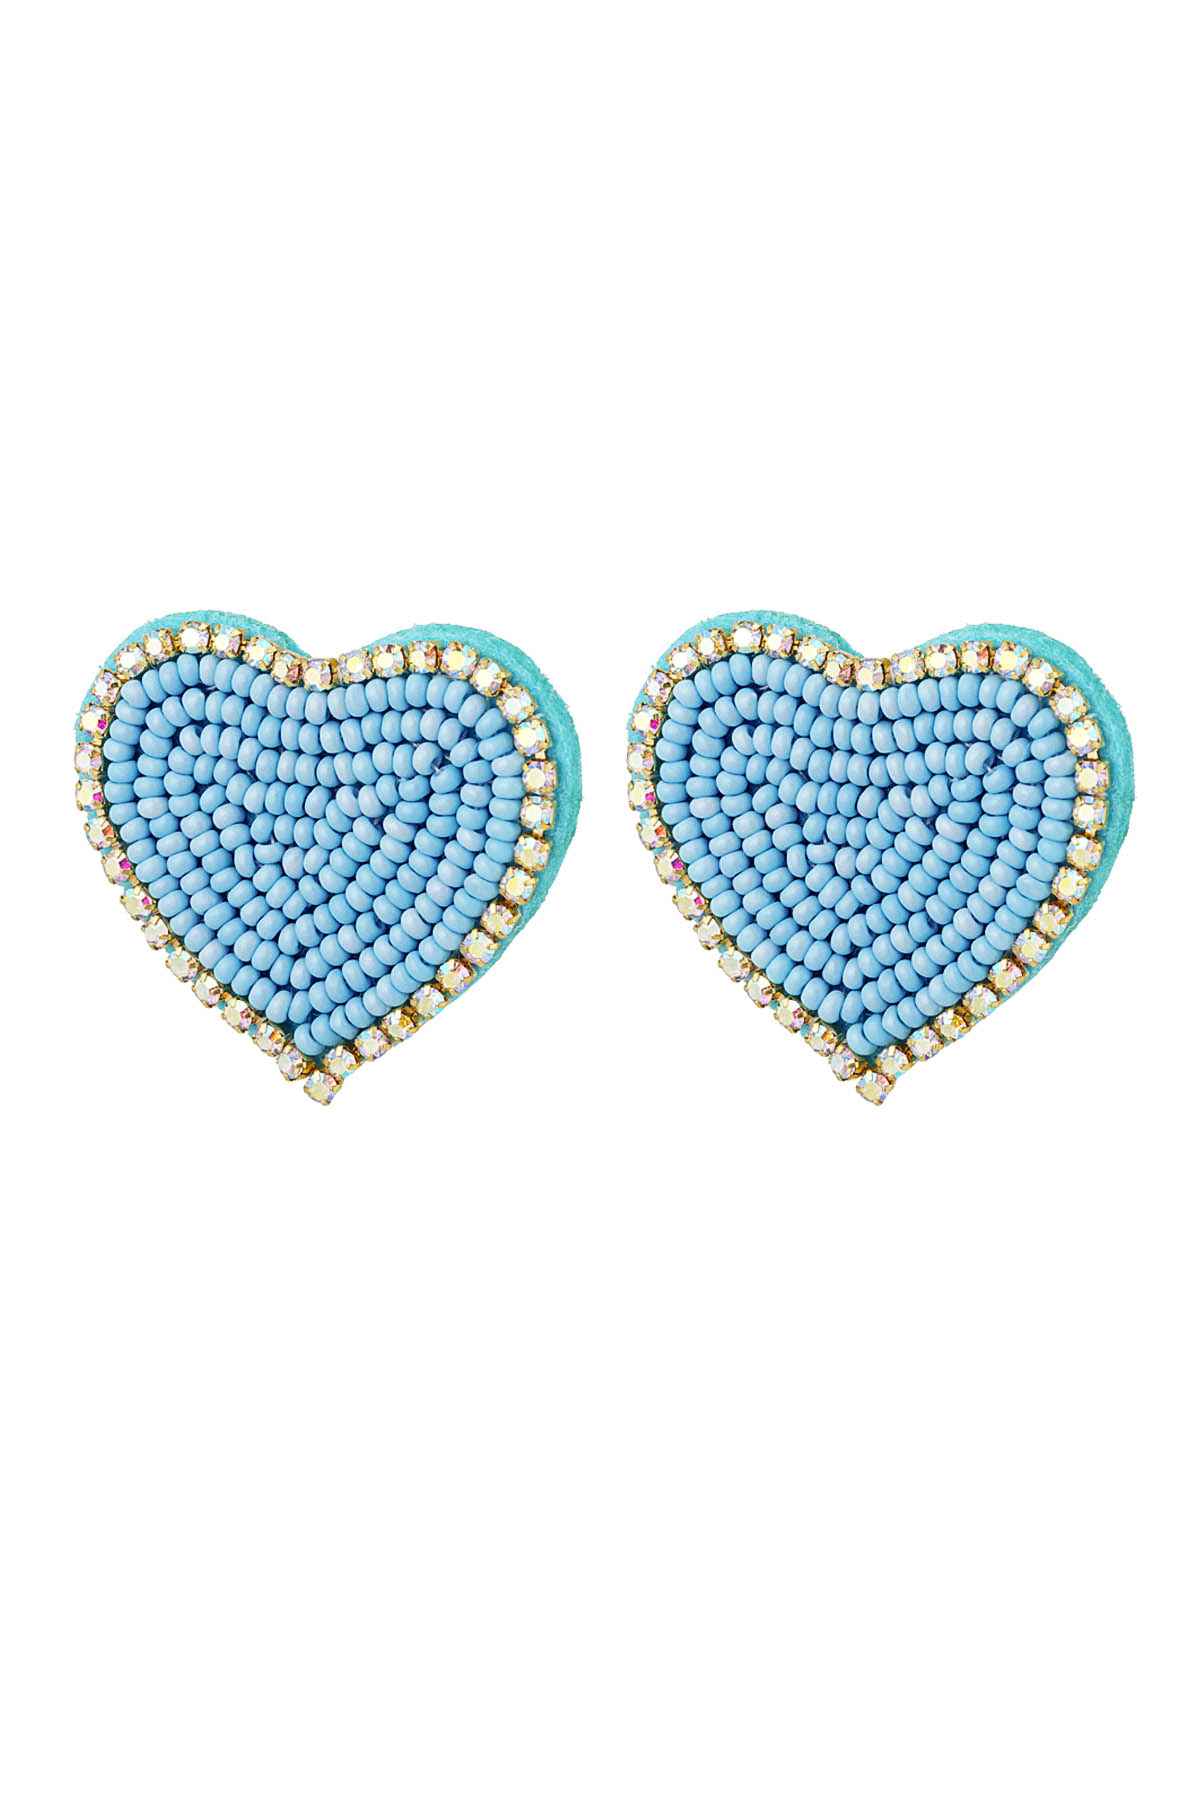 Perlenohrringe Herz mit Strasssteinen Blau Glas h5 